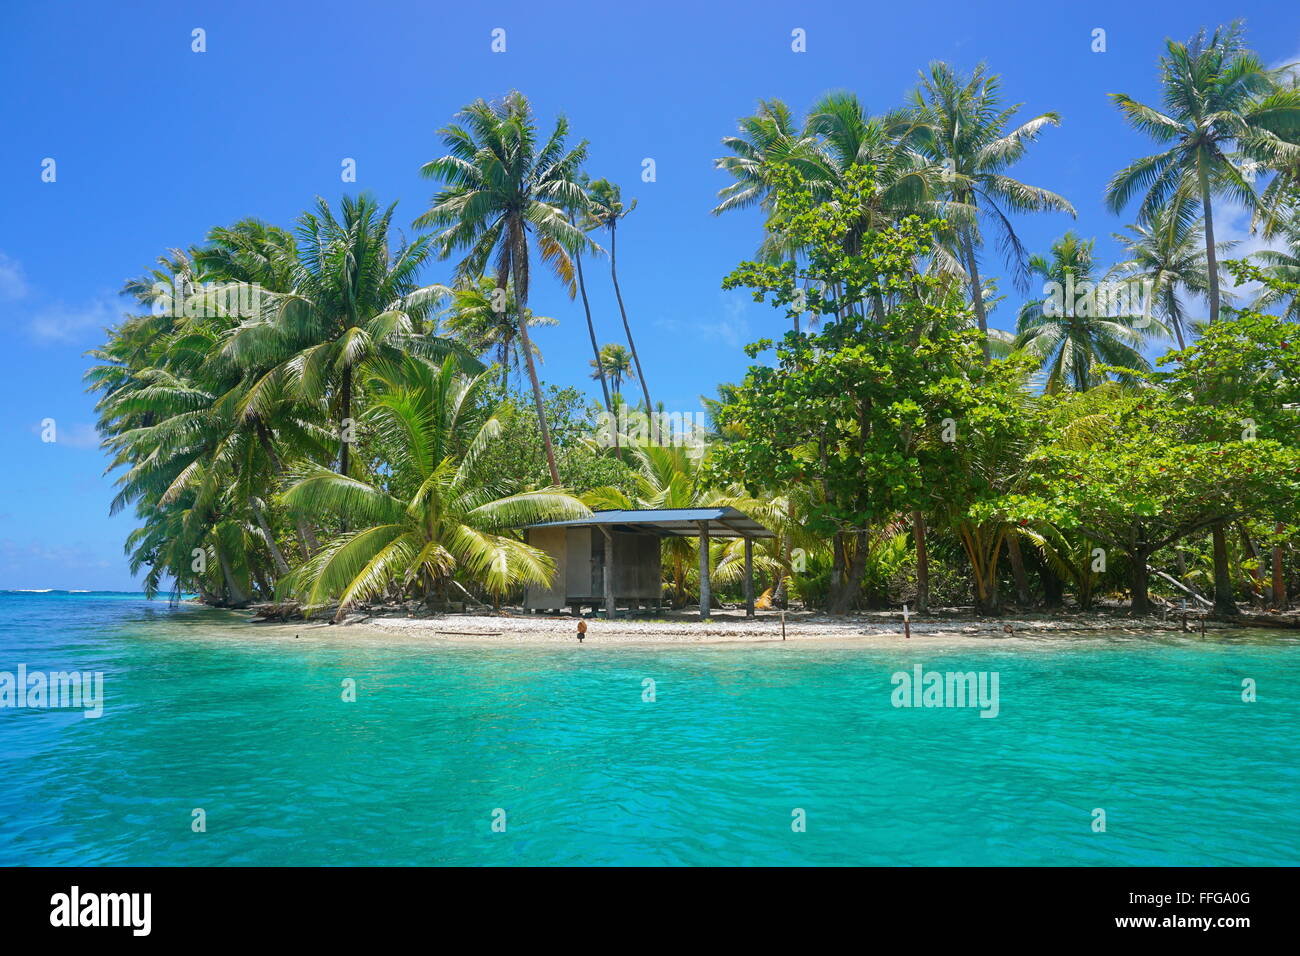 Una piccola capanna con vegetazione tropicale sulla riva di un isolotto, Huahine isola, oceano pacifico, Polinesia Francese Foto Stock